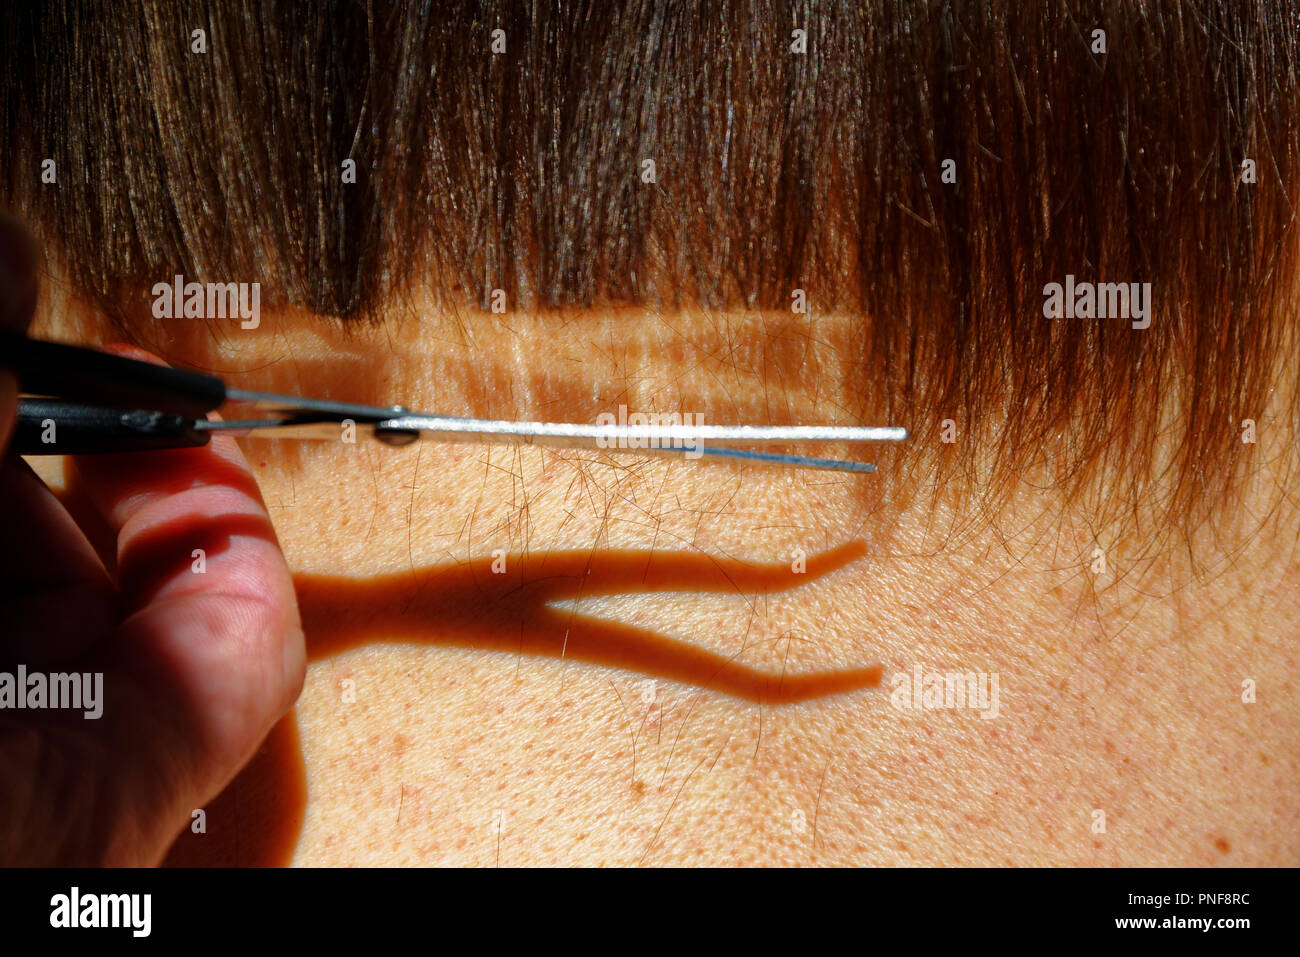 Un taglio di capelli che mostra le forbici con la loro riflessione brilla nei capelli e l'ombra della forbice sul collo sotto. Foto Stock